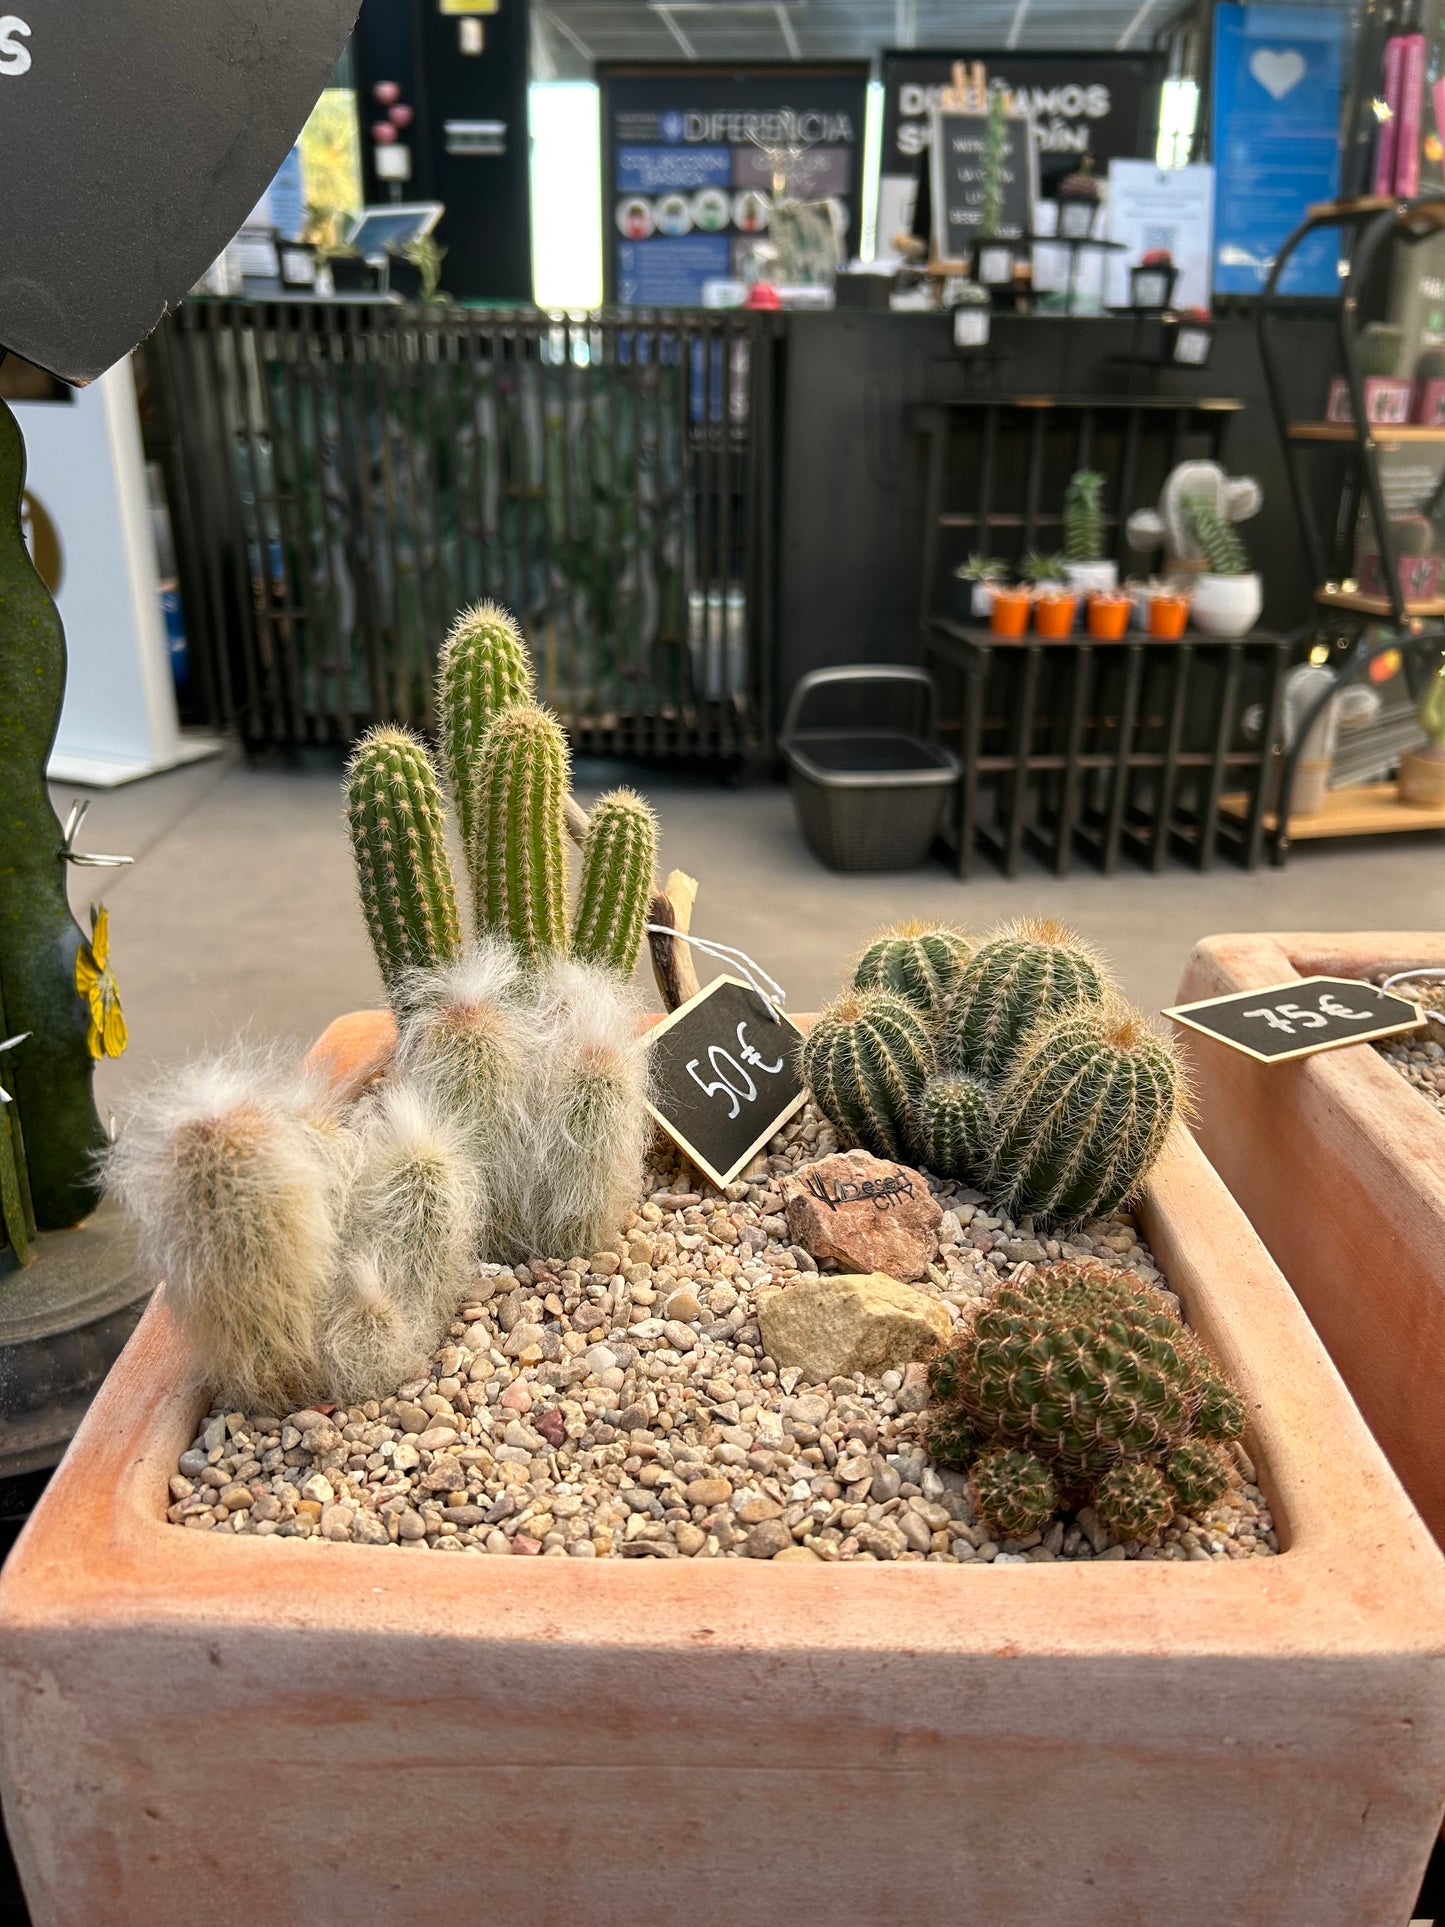 Cactus composition #1